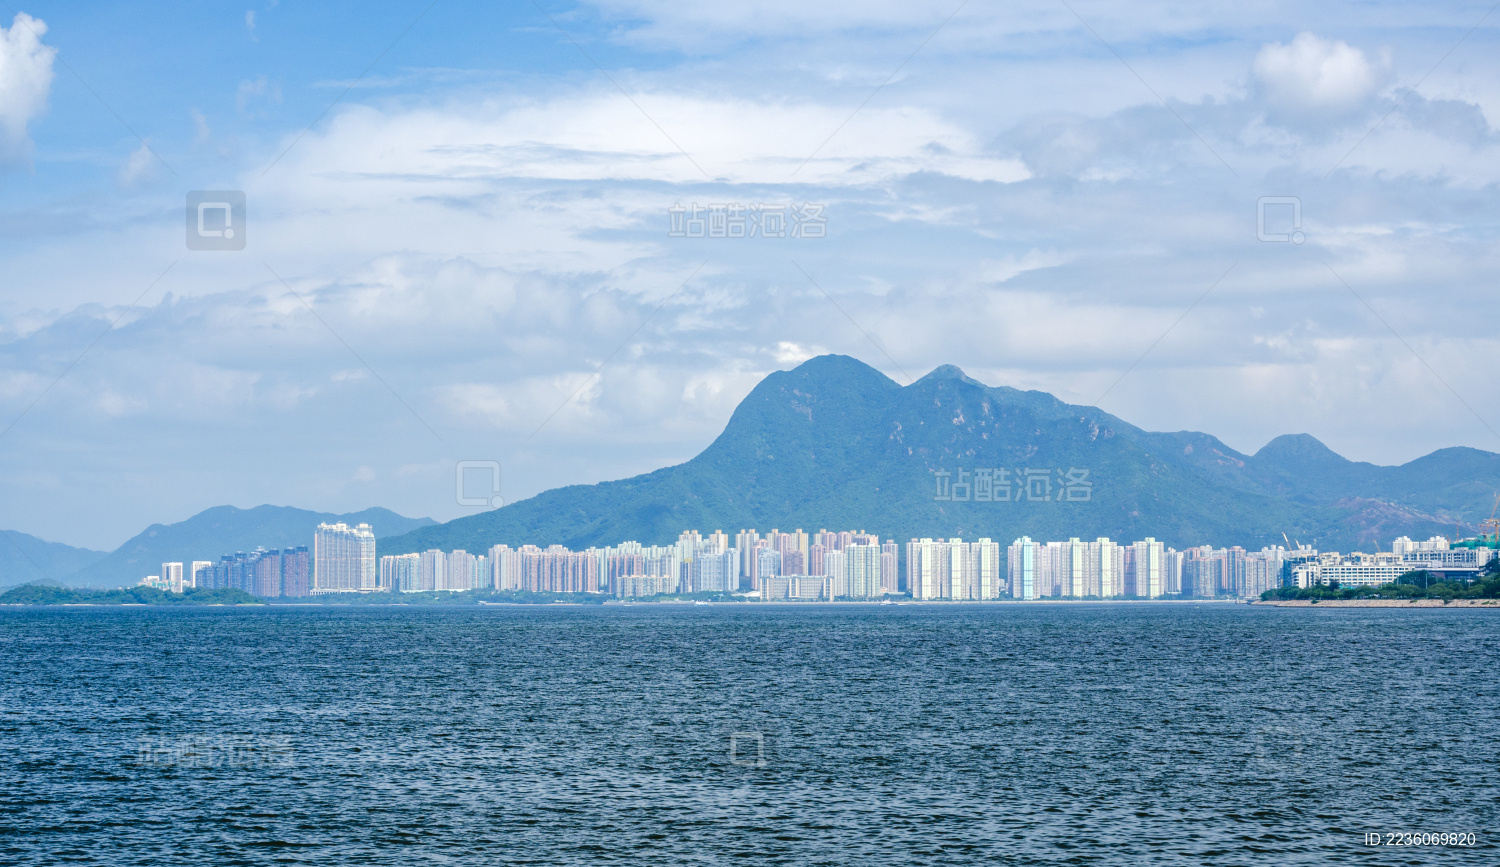 香港【新界】の観光地10か所おすすめ一覧まとめ。写真と地図と概要: 深セン・香港の観光旅行生活情報局